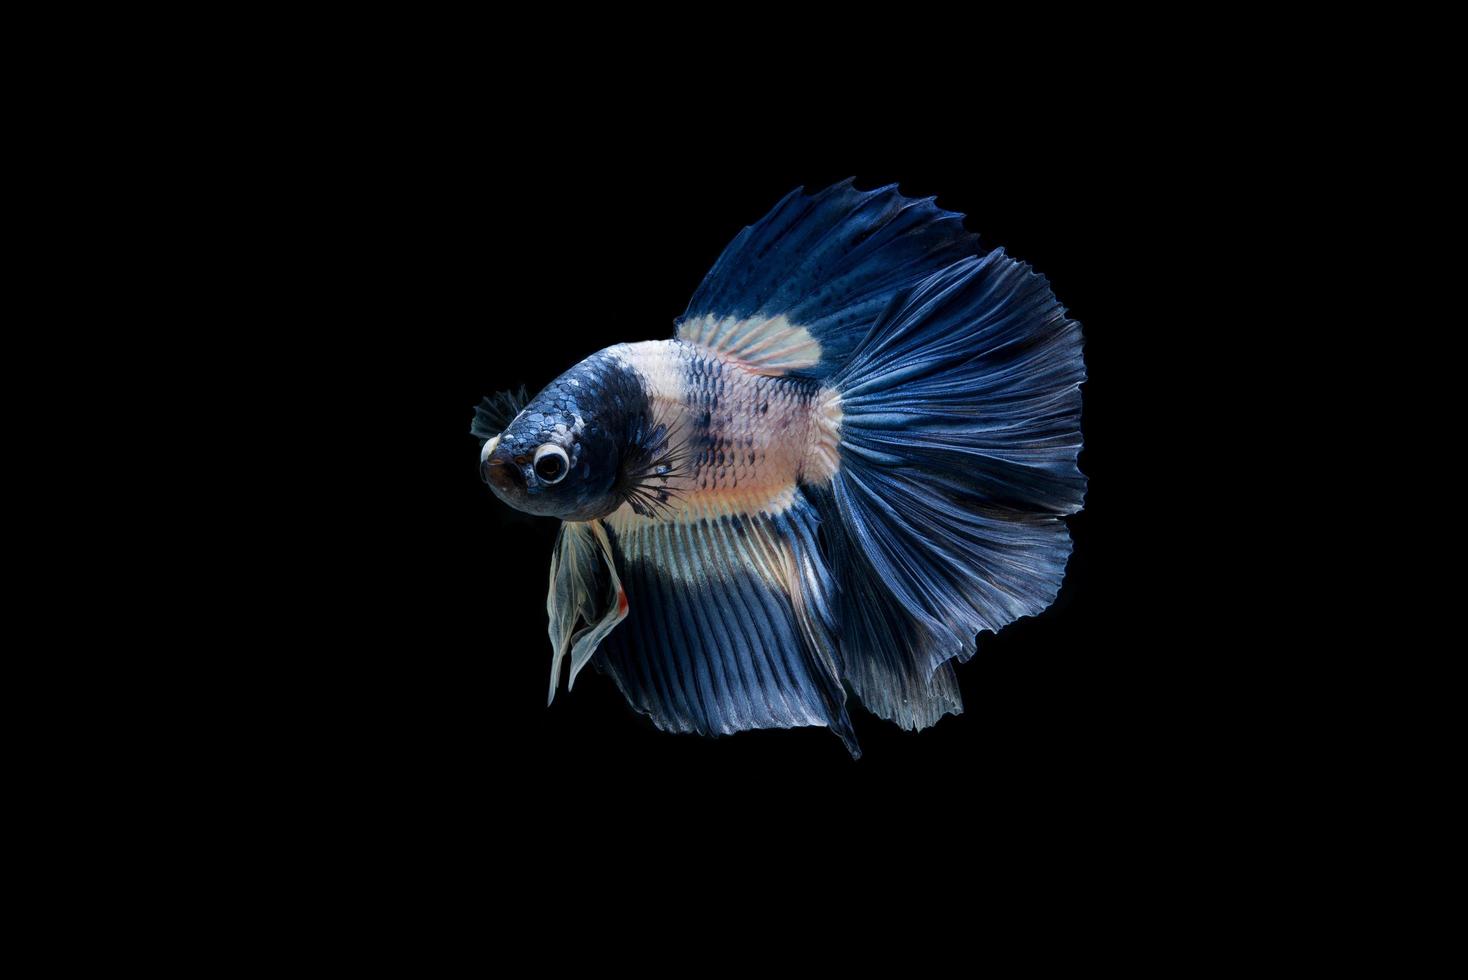 lindo peixe betta siamês colorido foto